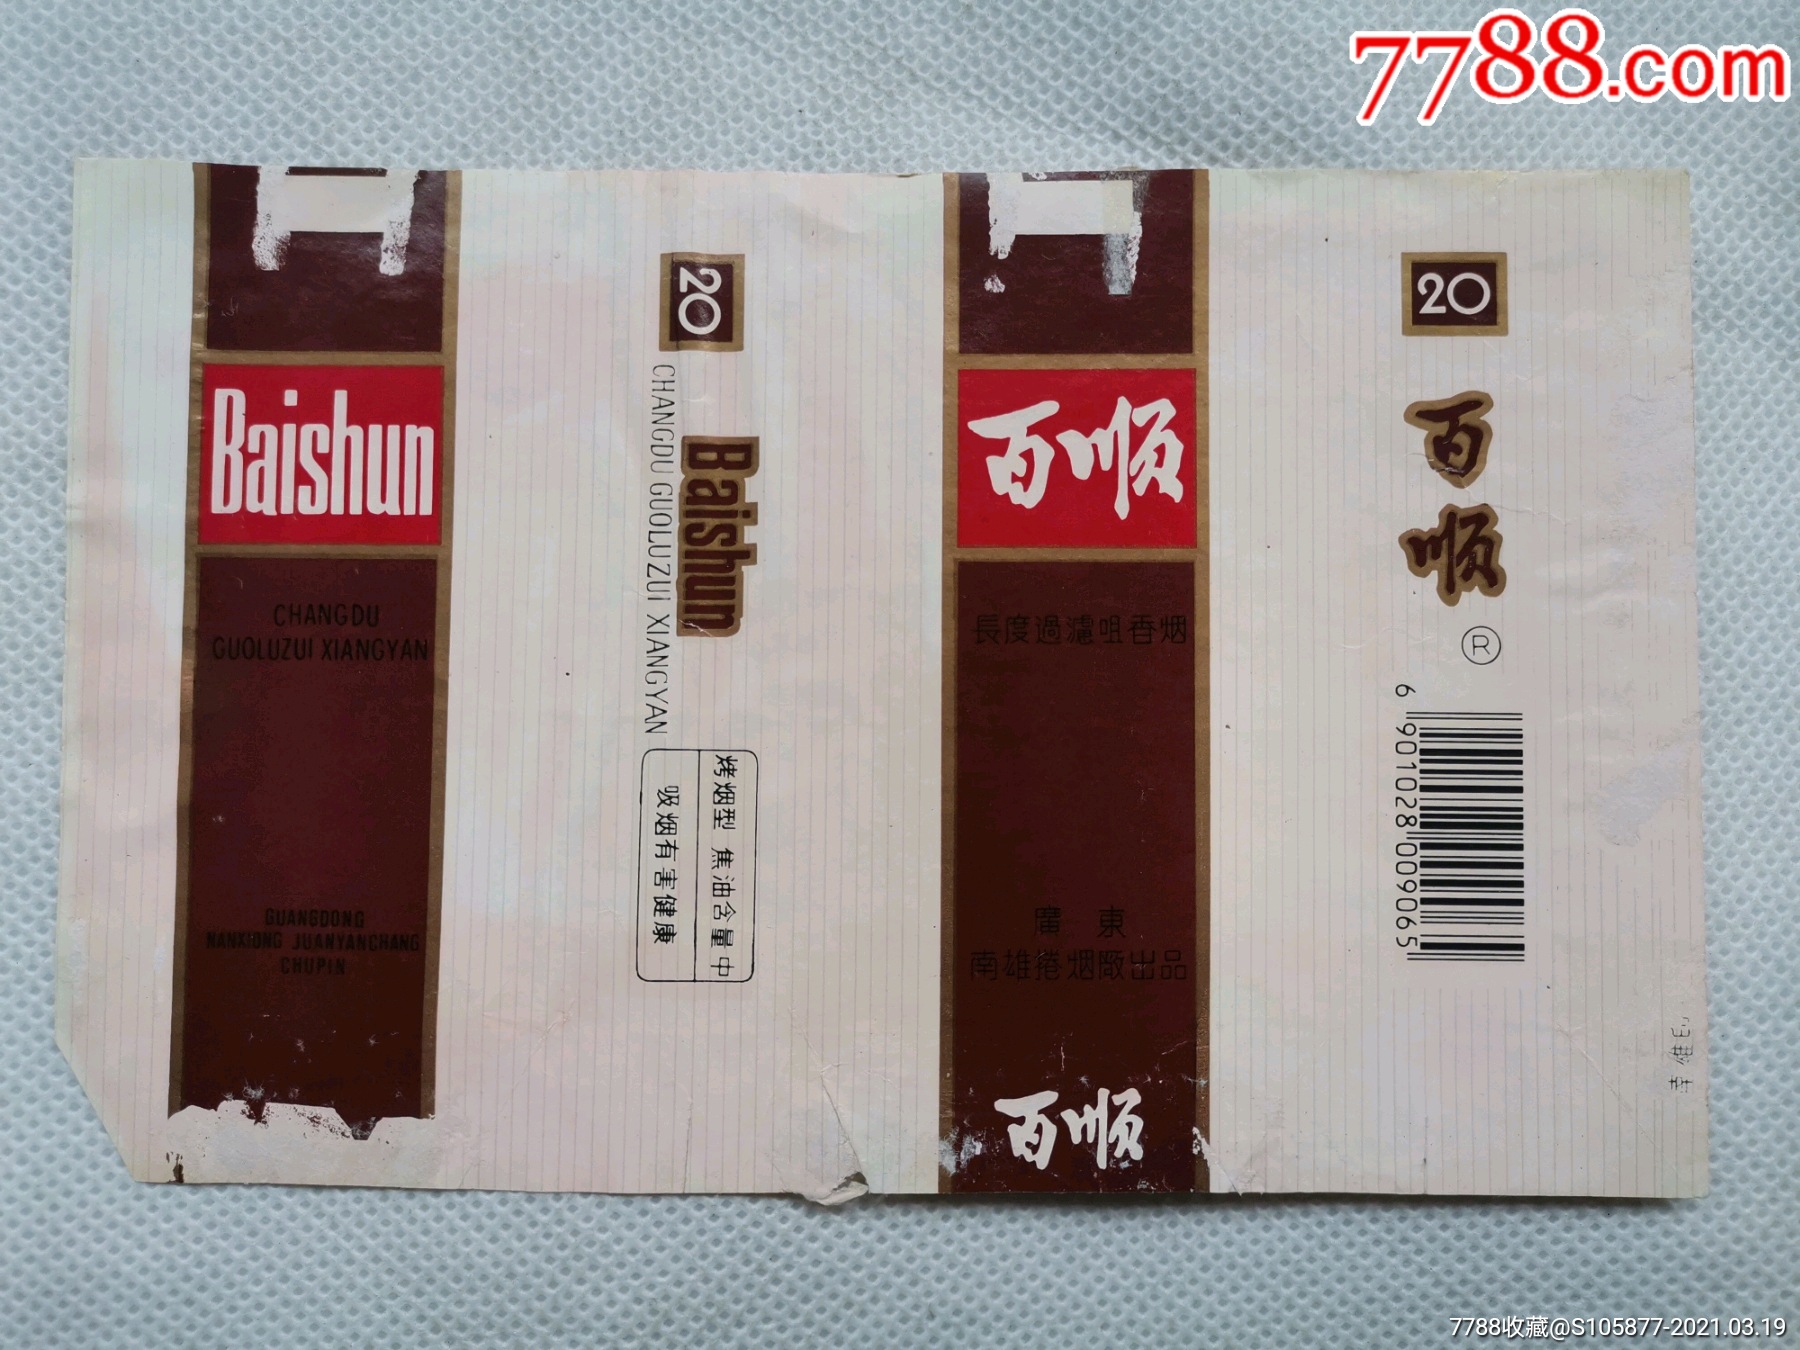 广东南雄卷烟厂出品的百顺香烟烟标一张